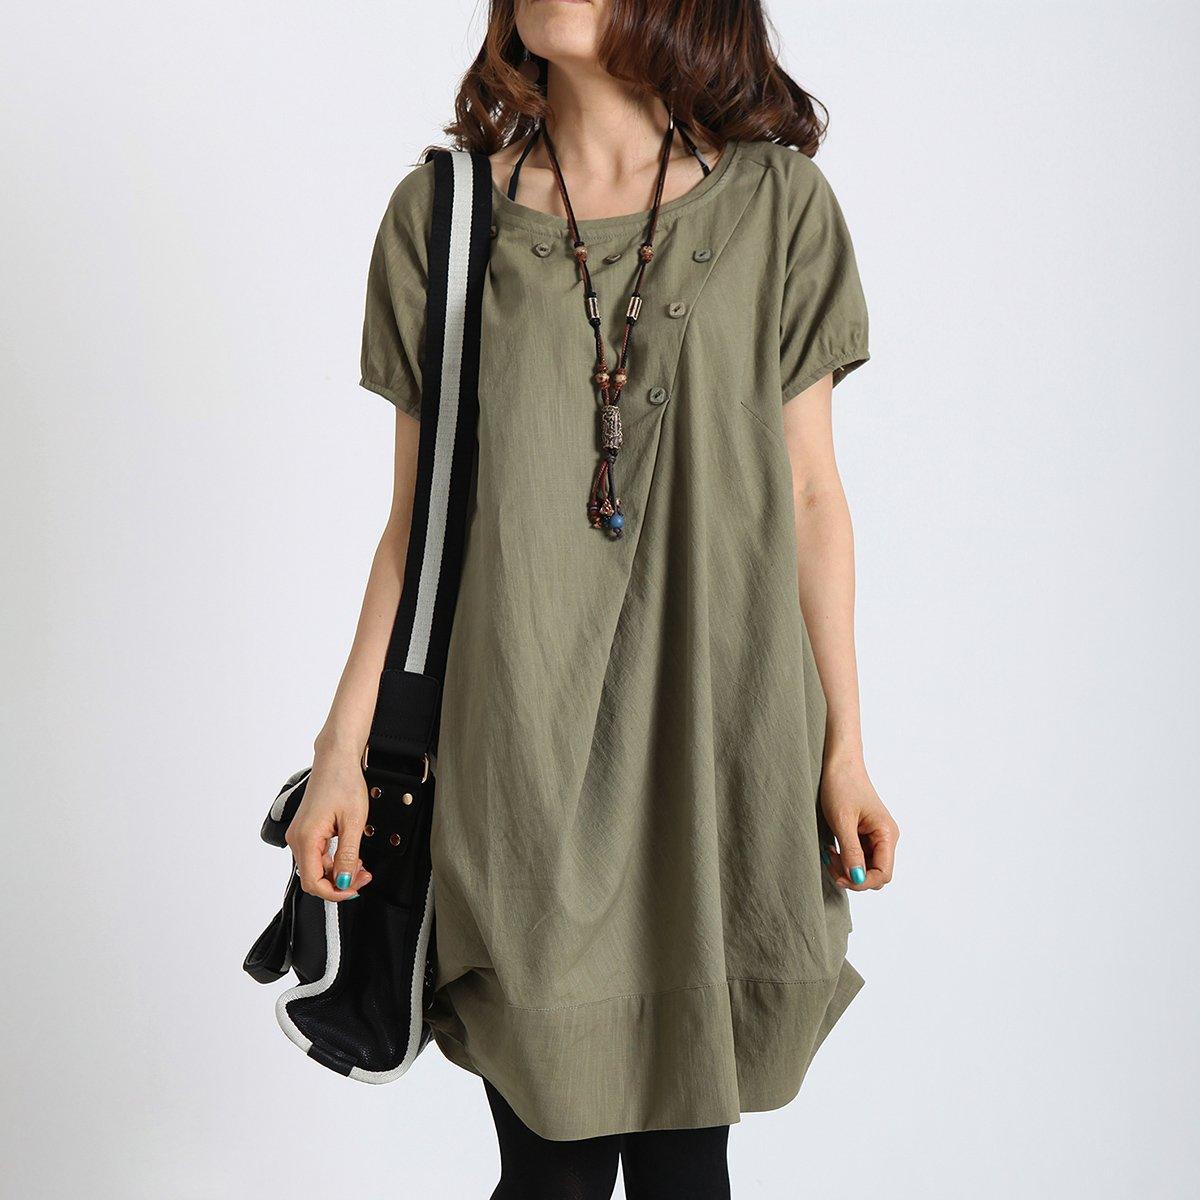 Tea green cotton sundress baggy linen casual summer dress - Omychic